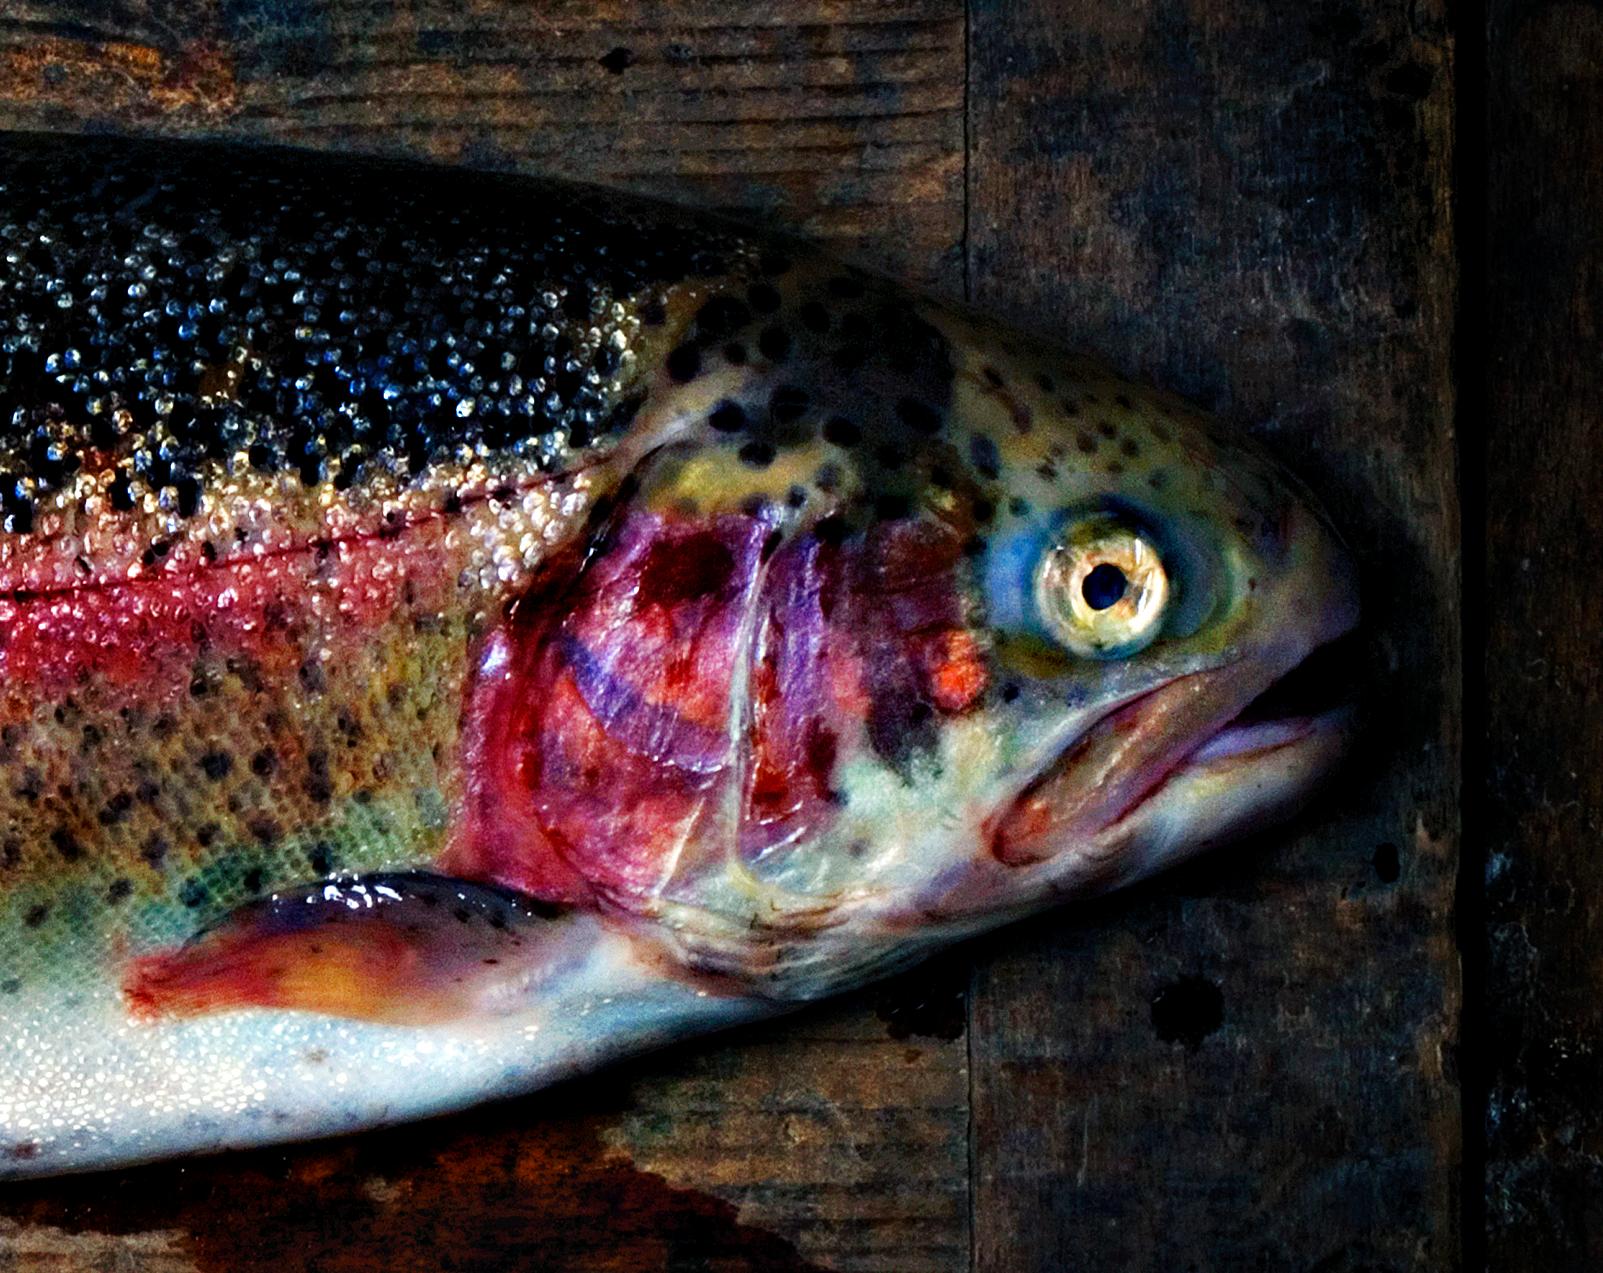 Forelle -Signierter Druck in limitierter Auflage, Stillleben, Fisch, Contemporary – Photograph von Ian Sanderson